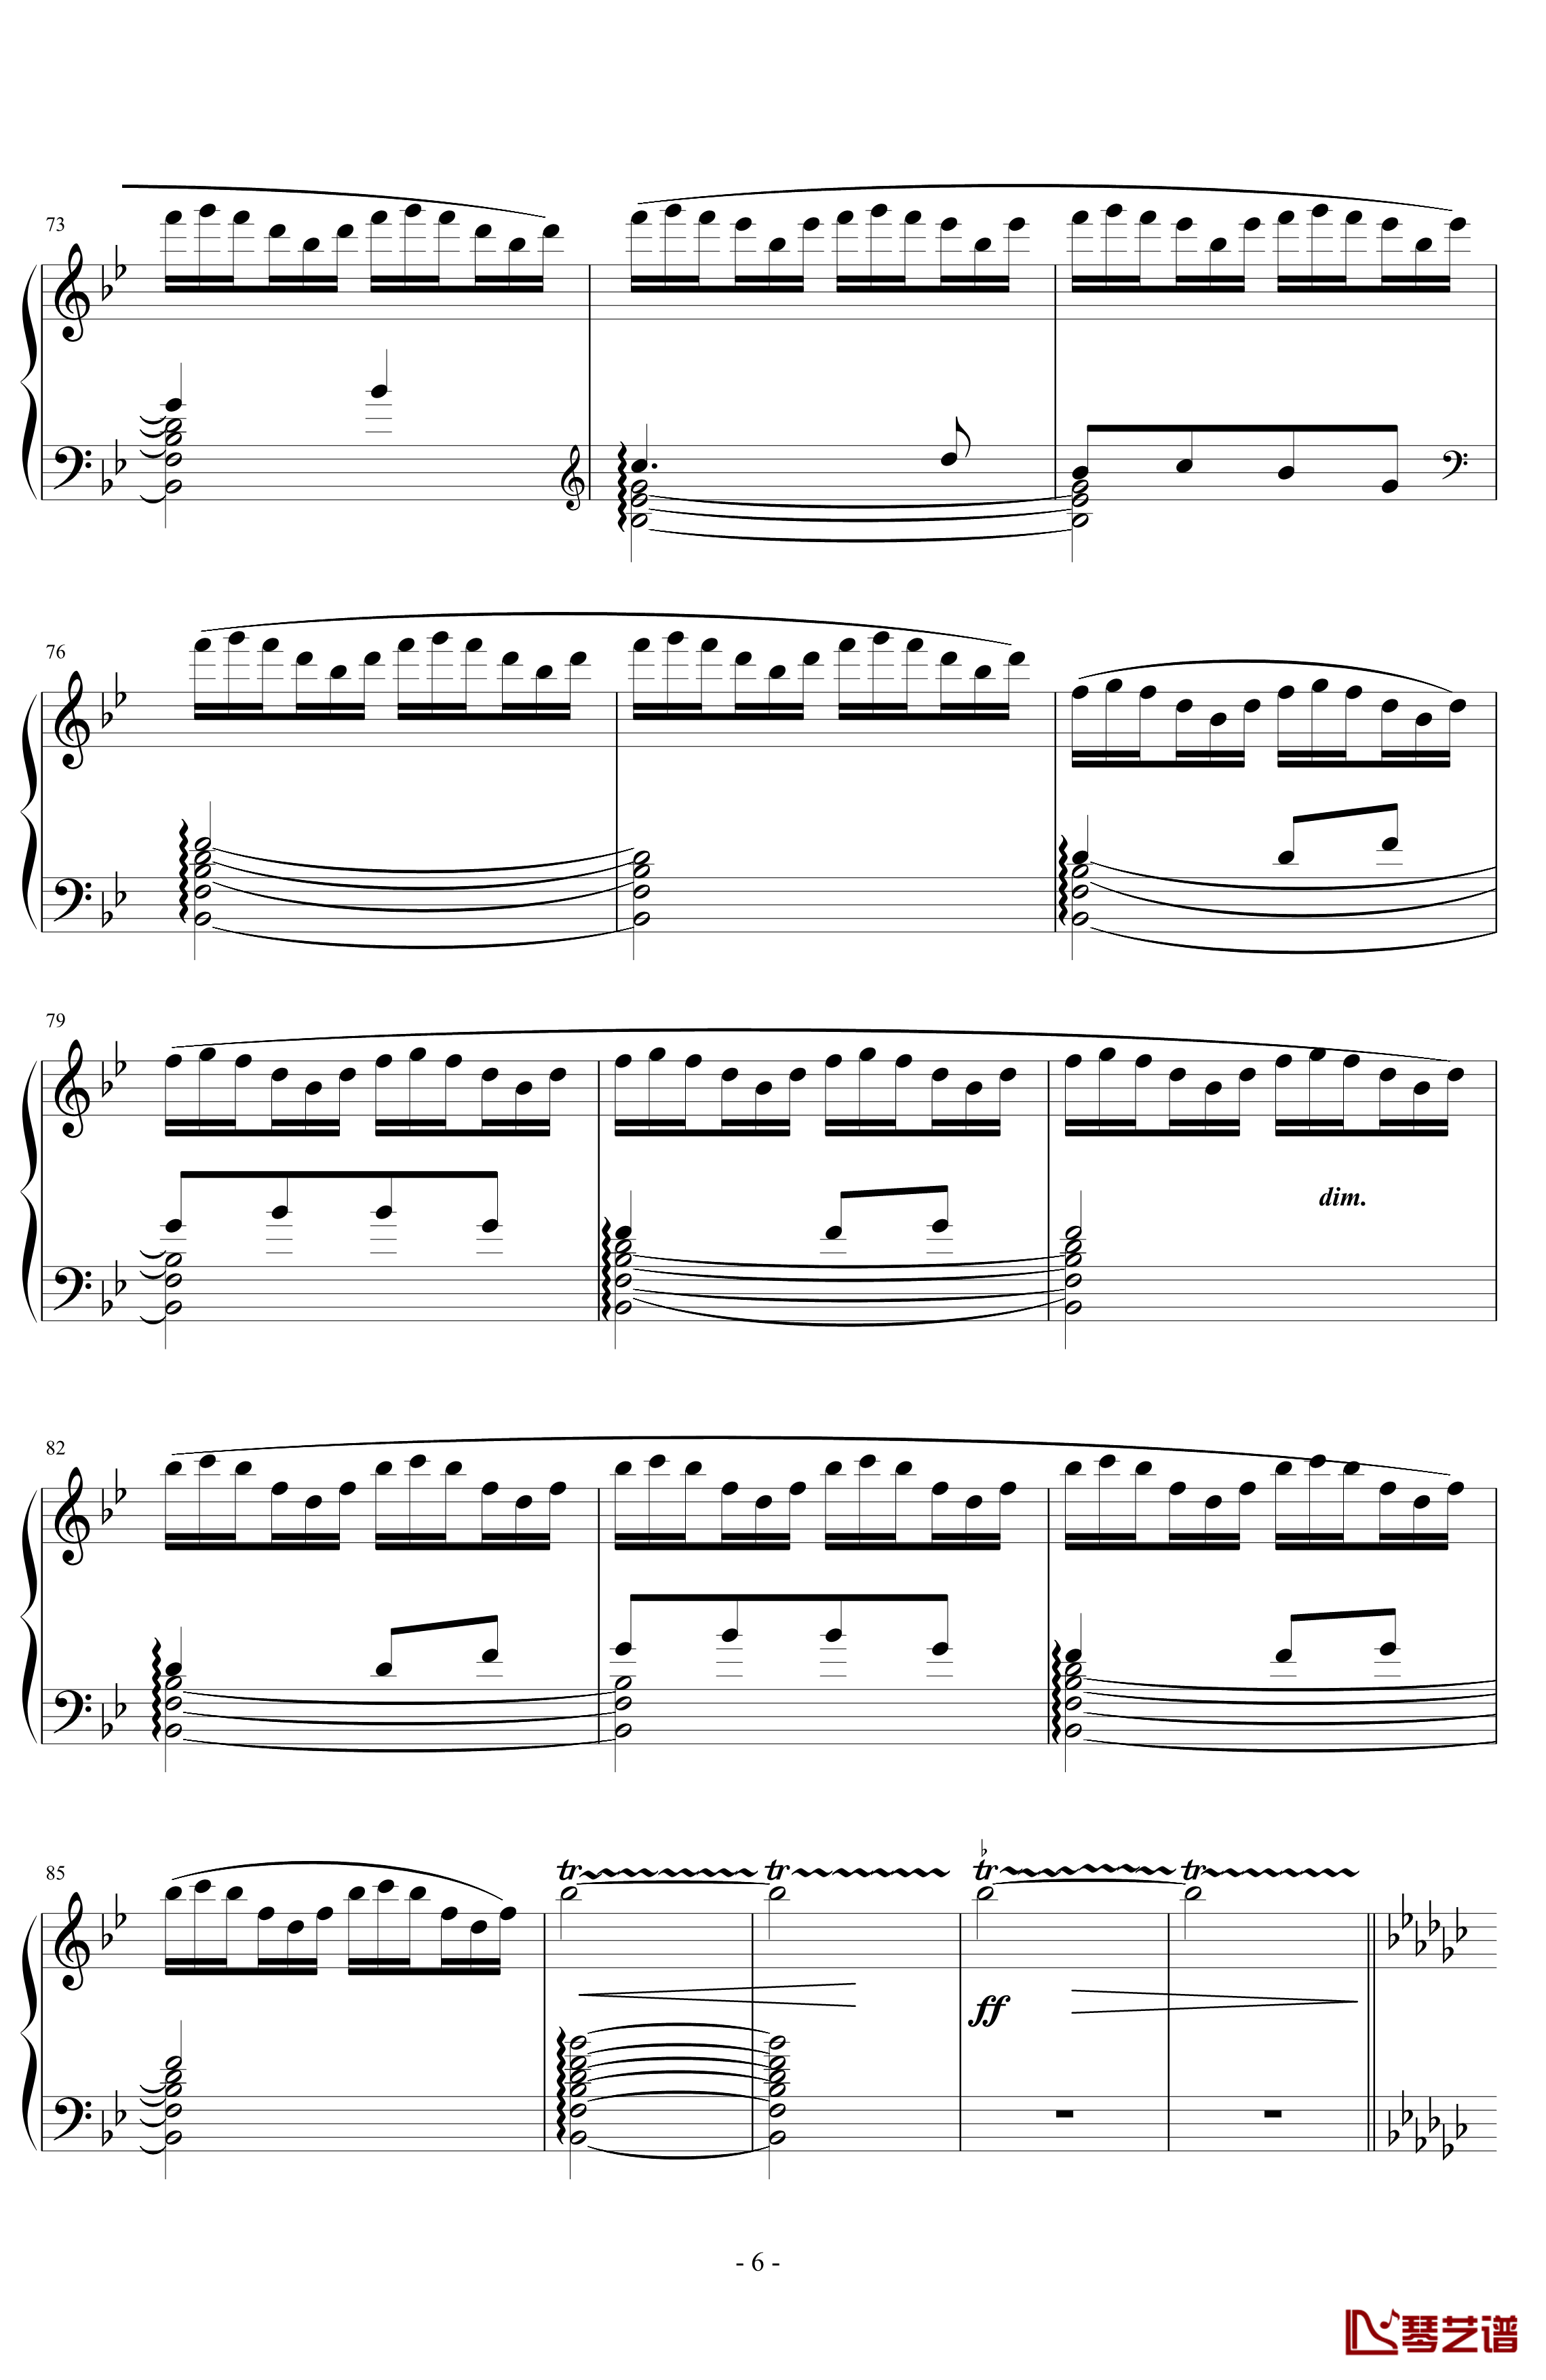 《练习曲Op.25 No.3》钢琴谱-阿连斯基-希望能为大家带来惊喜6